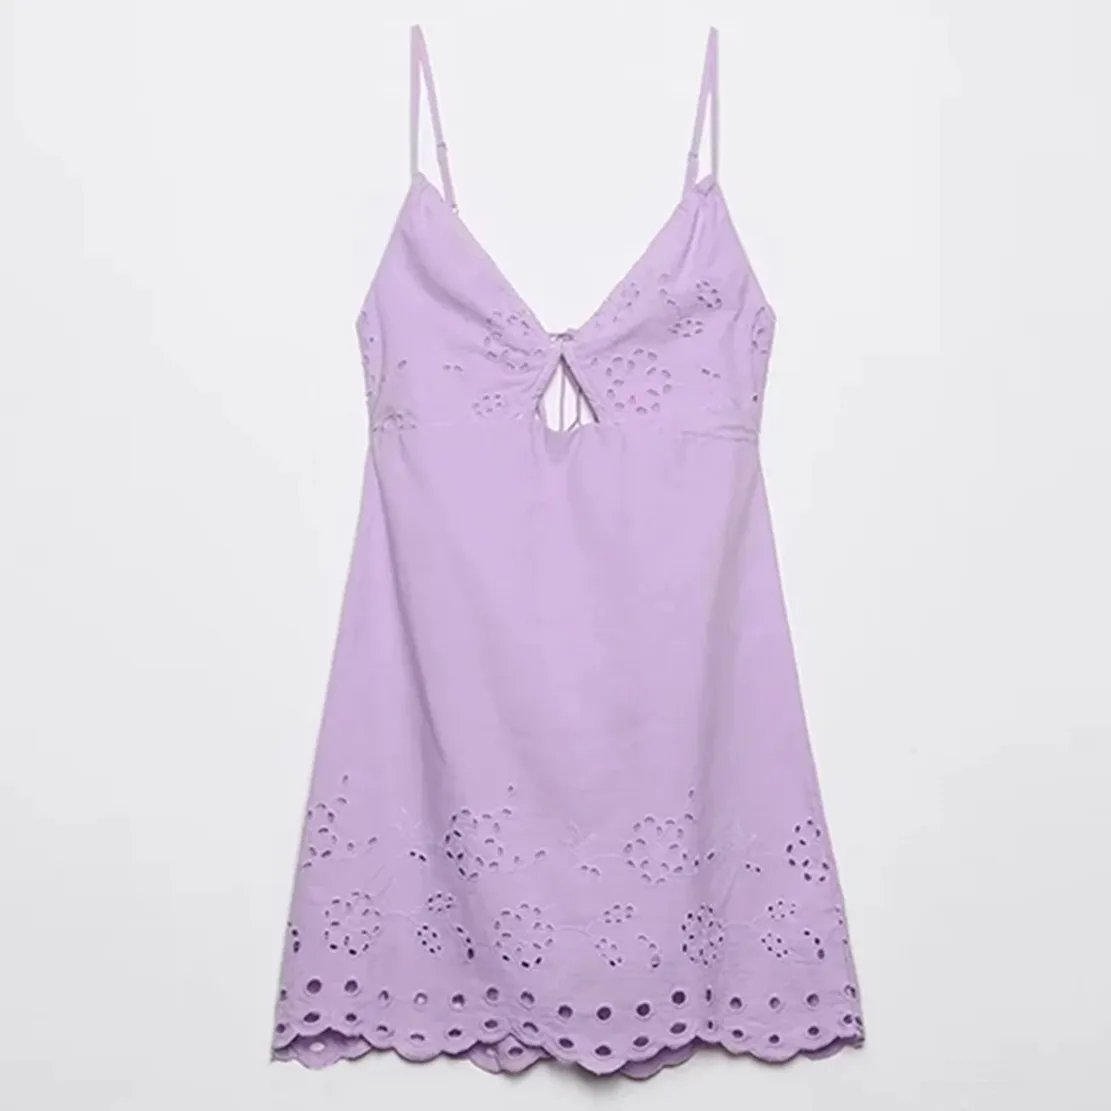 

Elmsk французское модное пикантное элегантное пляжное мини-платье фиолетового цвета без бретелек